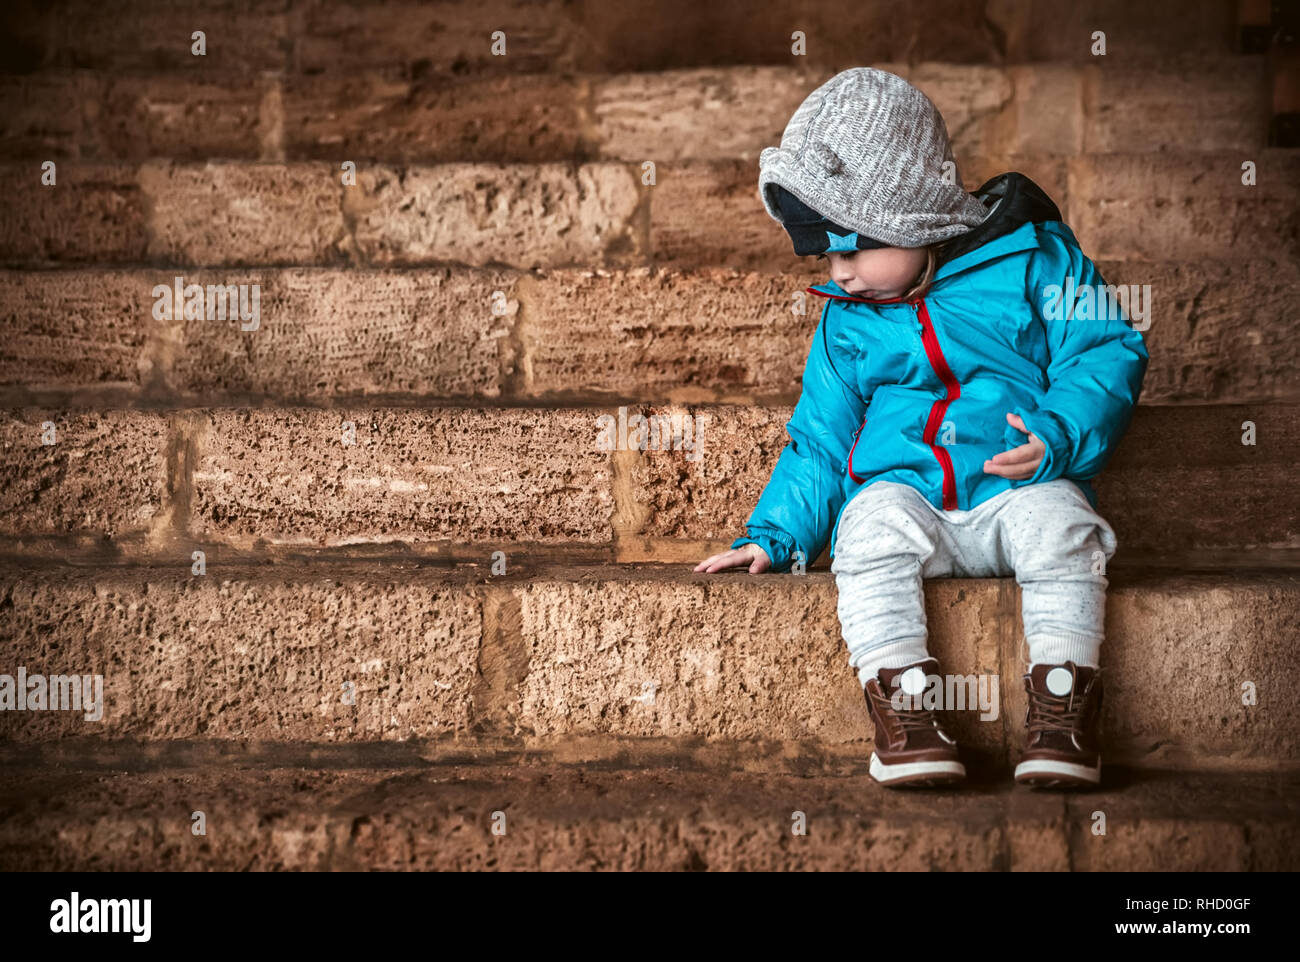 Süße kleine Baby boy in warme Kleidung sitzt auf der Treppe und wartet auf einen Eltern im Hof spazieren zu gehen gekleidet, glückliche unbeschwerte Kindheit Stockfoto